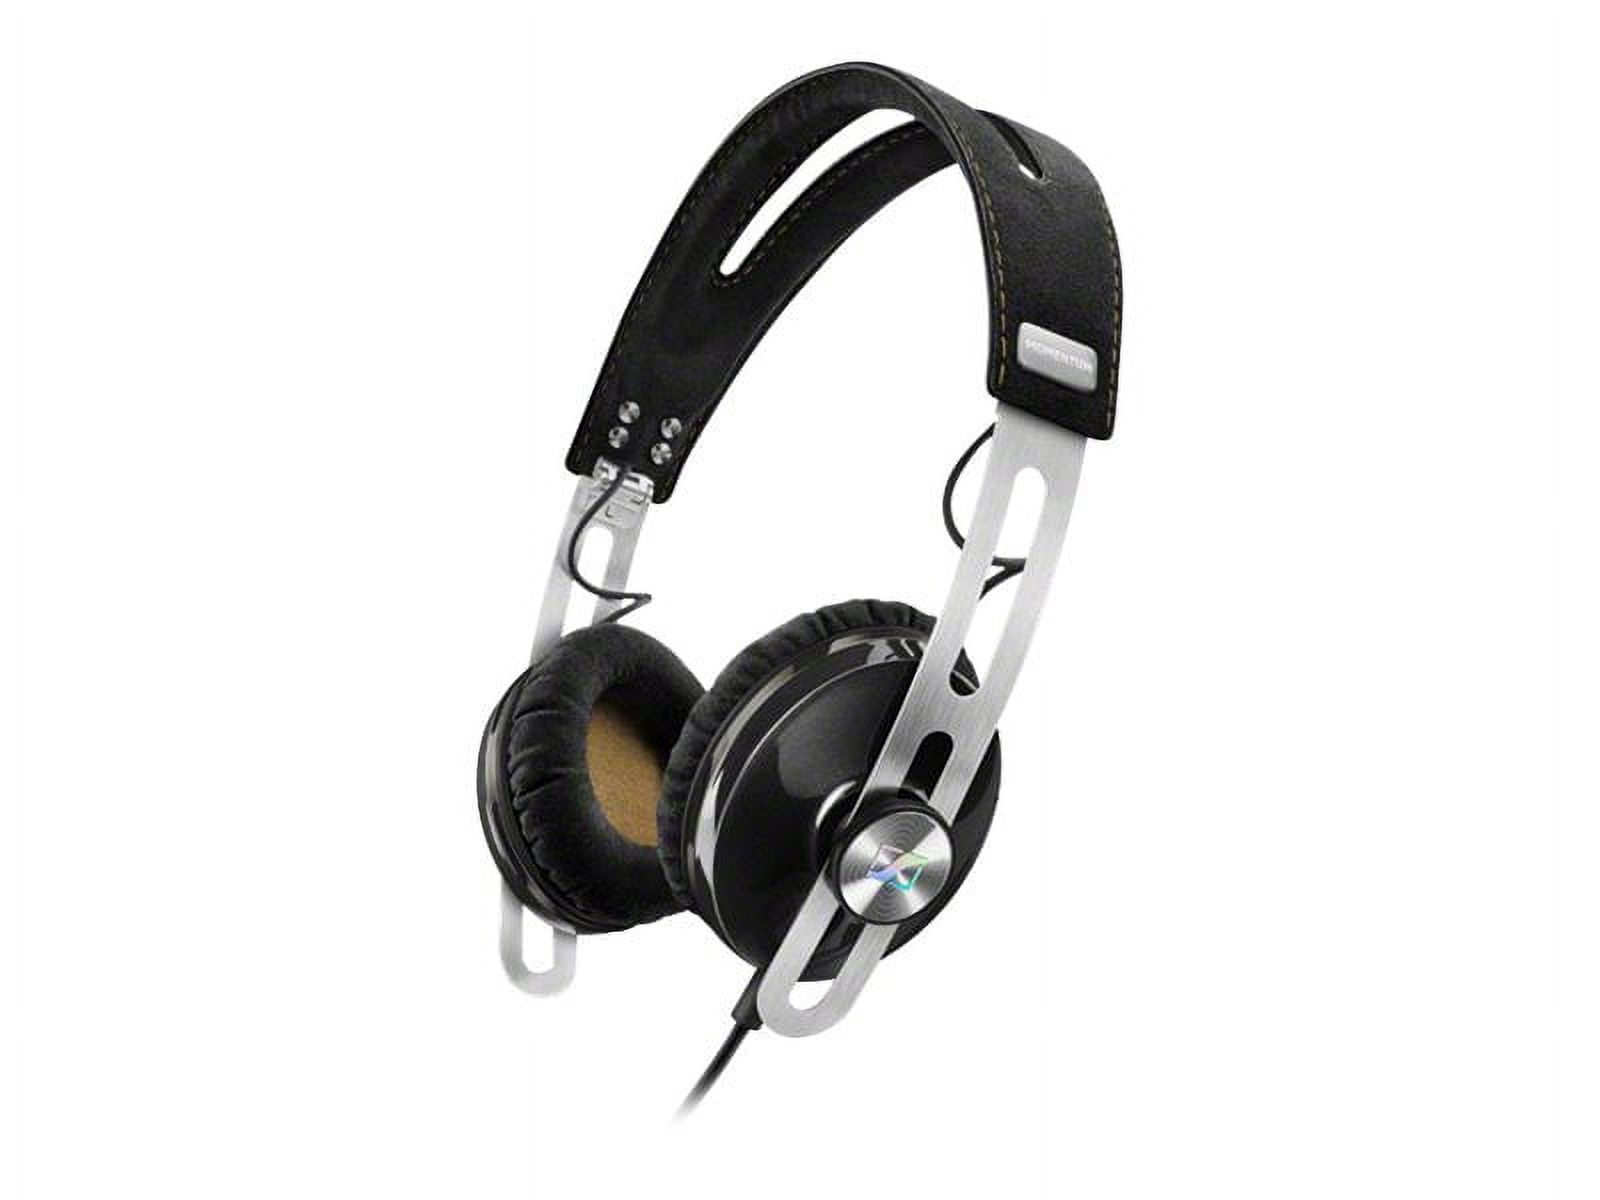 New Sennheiser 506251 M2OEI Momentum On-Ear Stereo Audio Headphones Black iOS - image 1 of 4